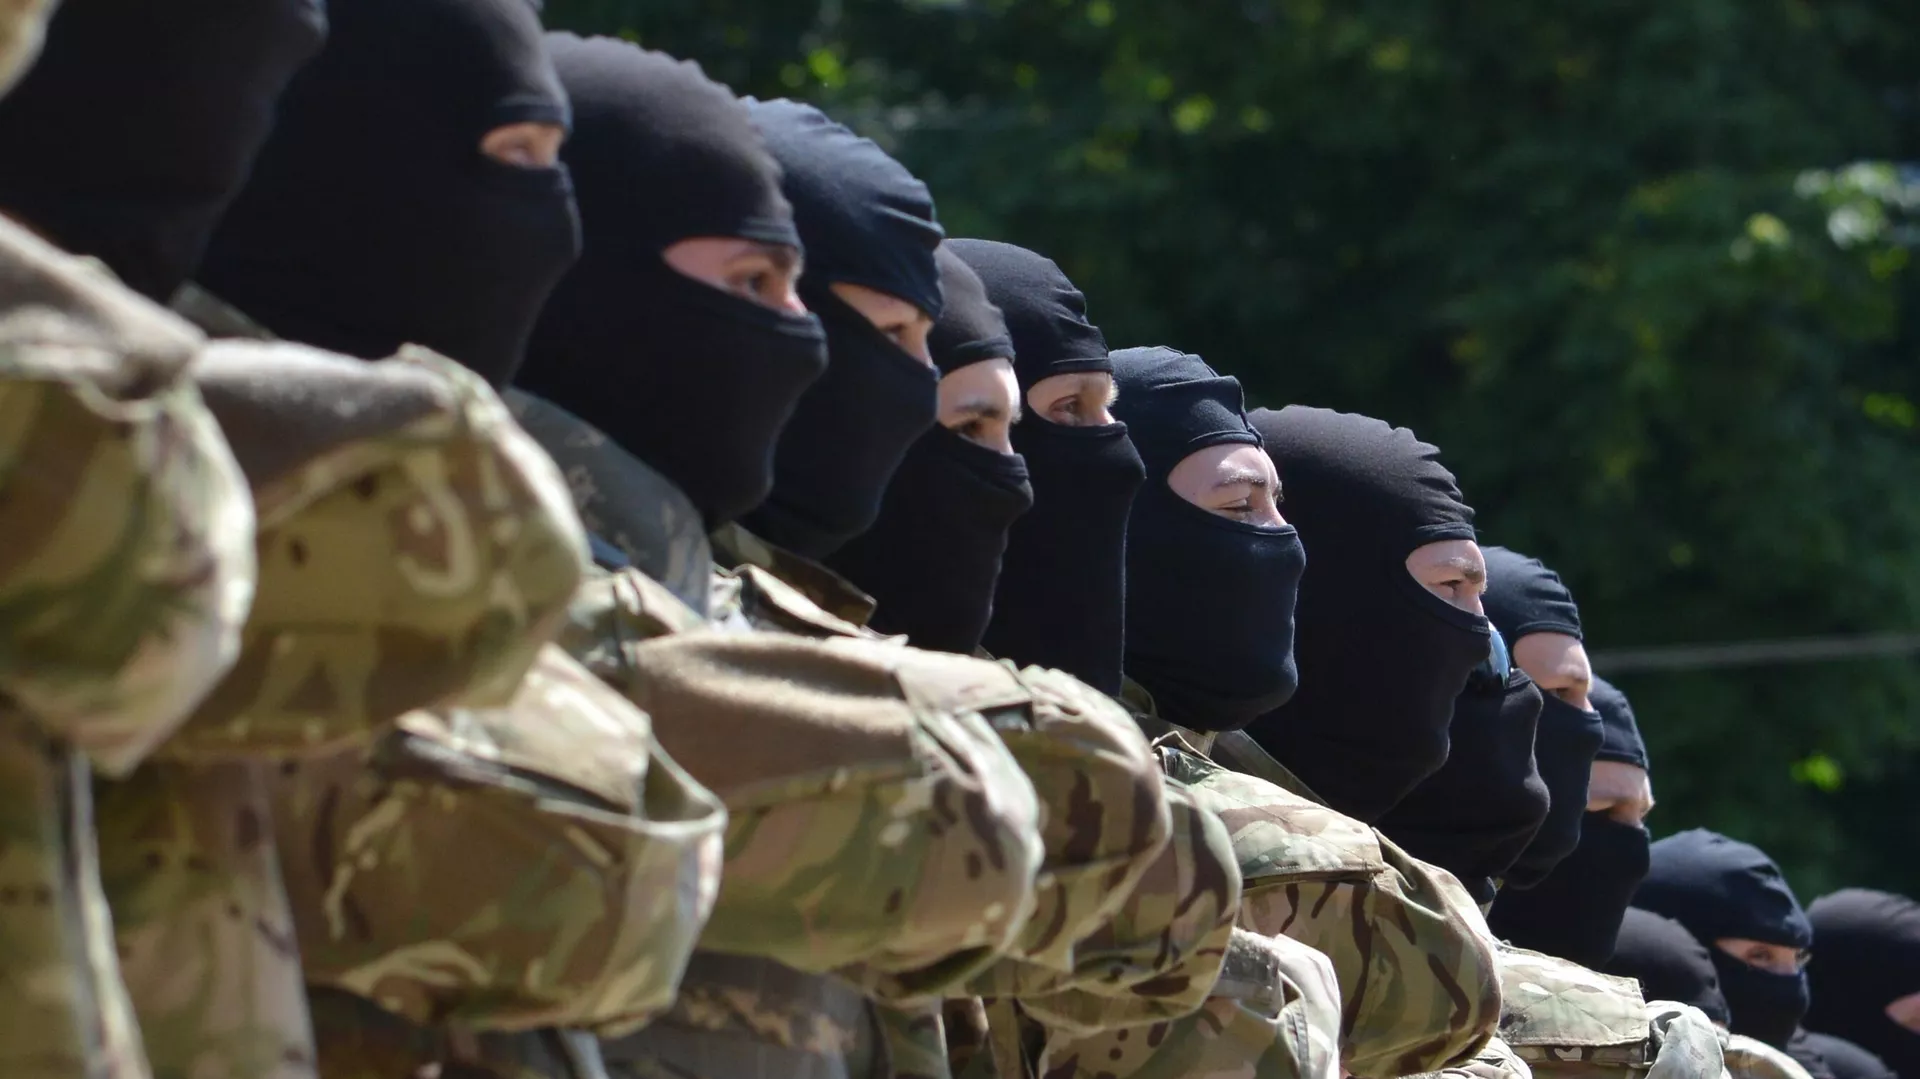  Un miembro del batallón neonazi ucraniano publica un video desde un jardín de infancia